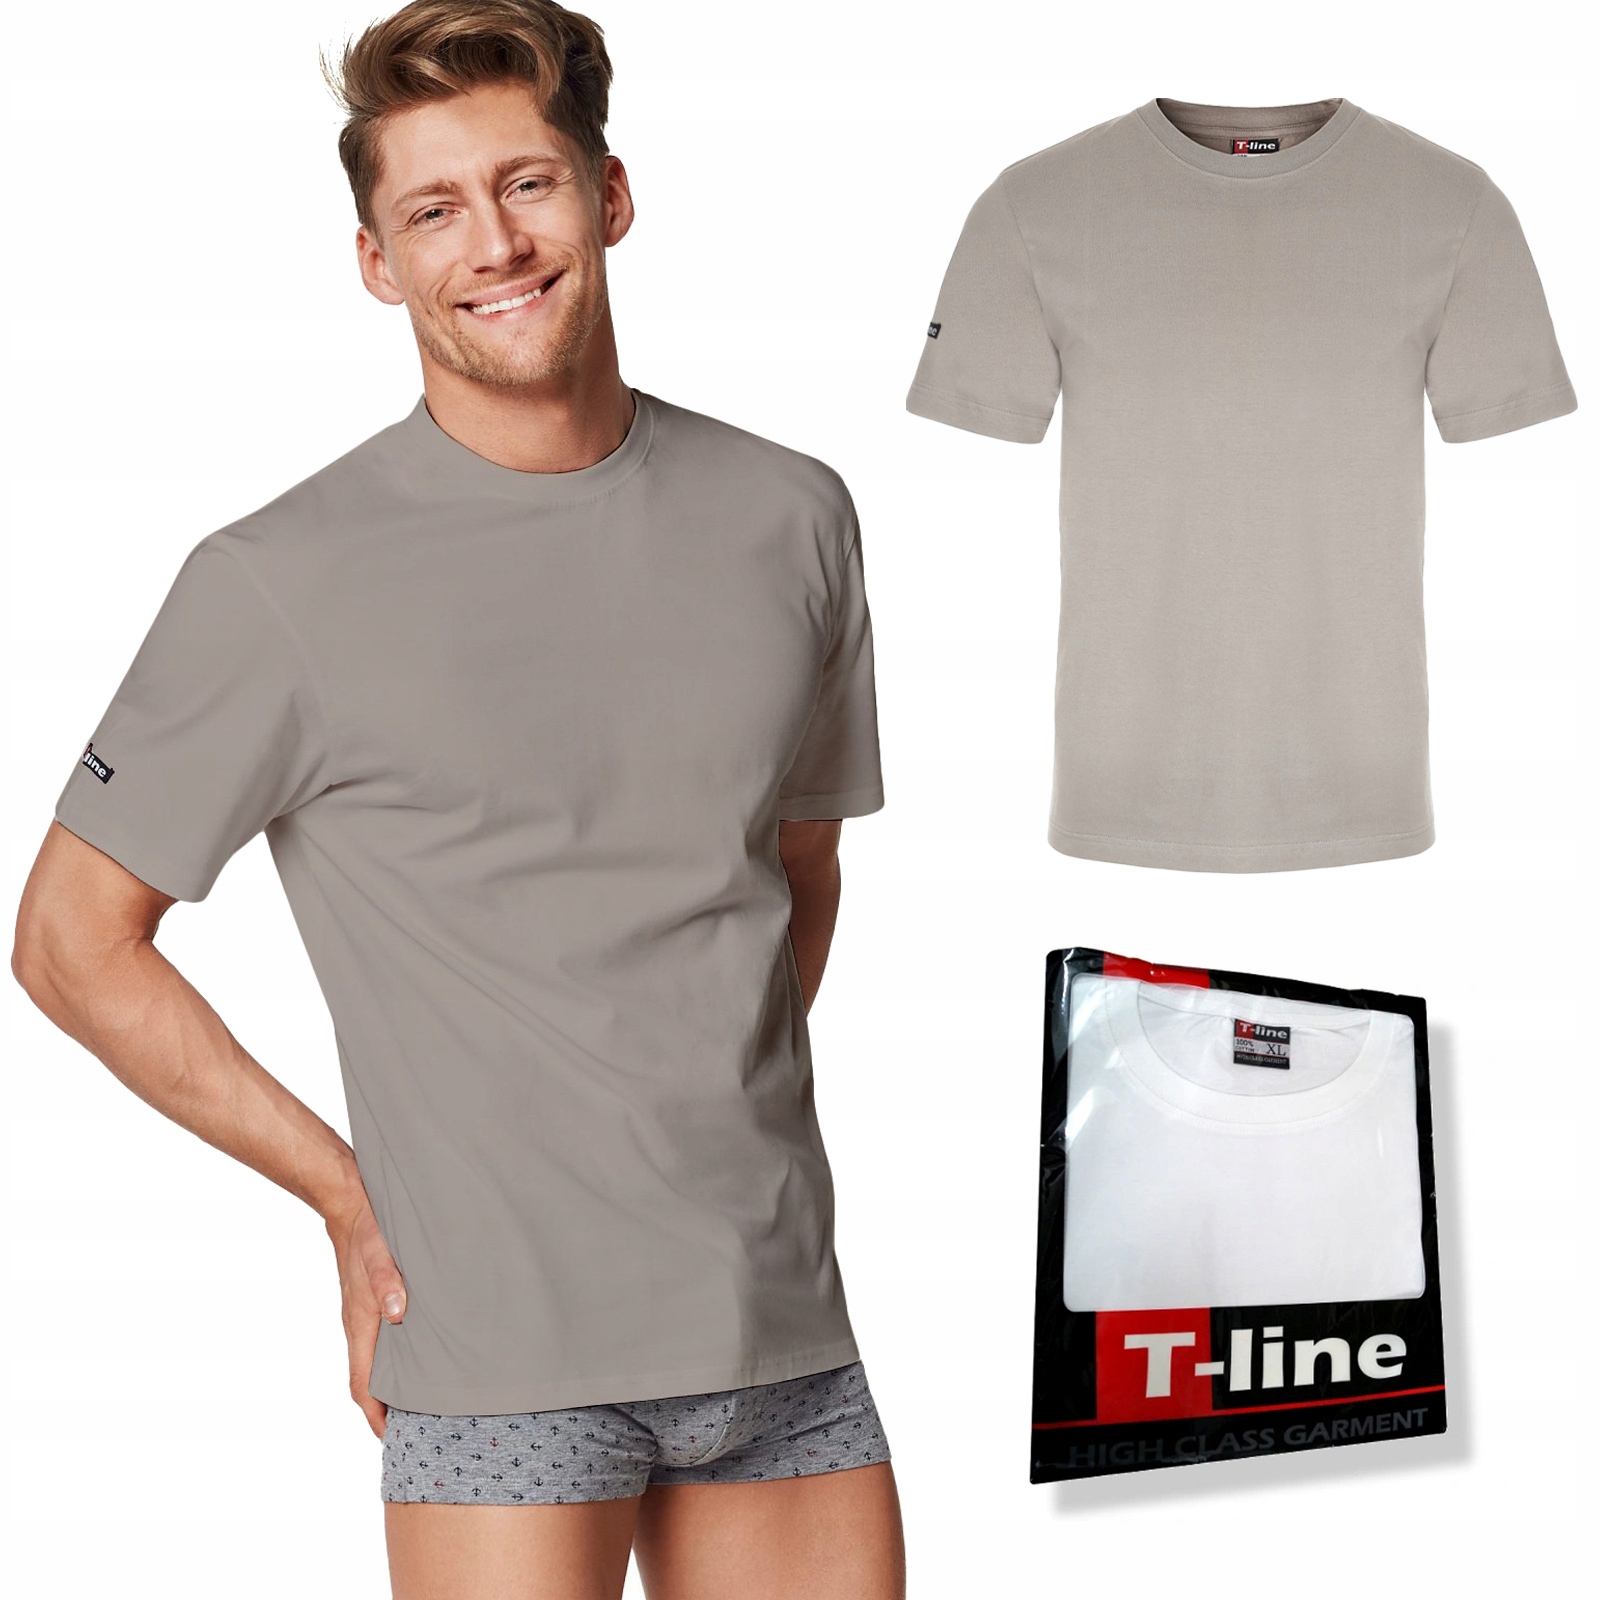 Pánske tričko HENDERSON T-LINE - XL